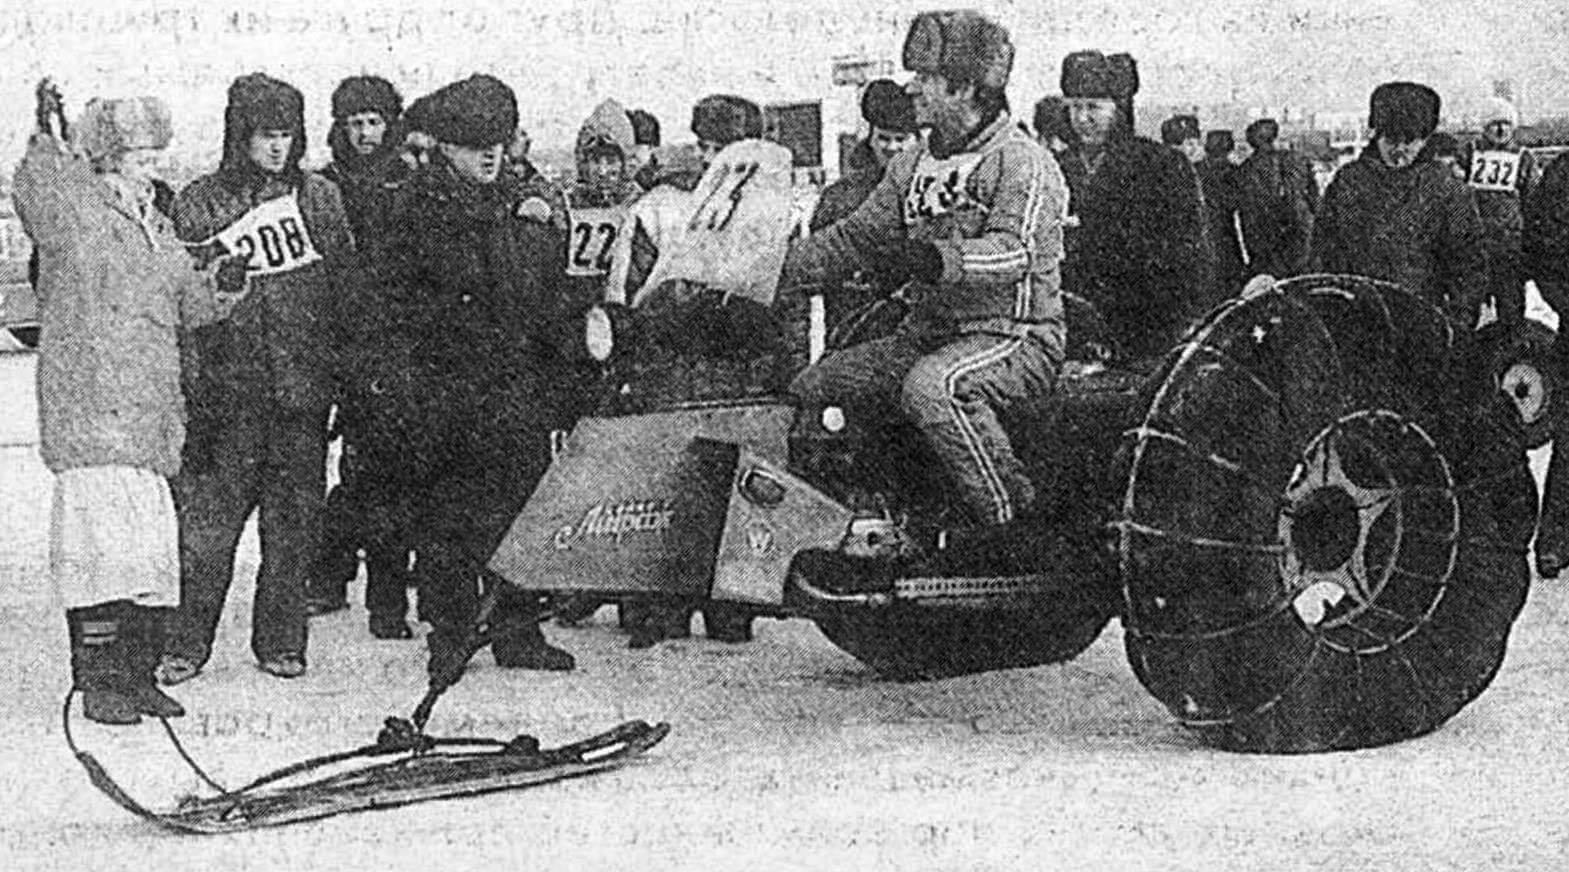 Стартует «Мираж» — тяжелый трехопорный колесно-лыжный мотоцикл, разработанный в надымском клубе «Вездеход» под руководством В. Васюхина.